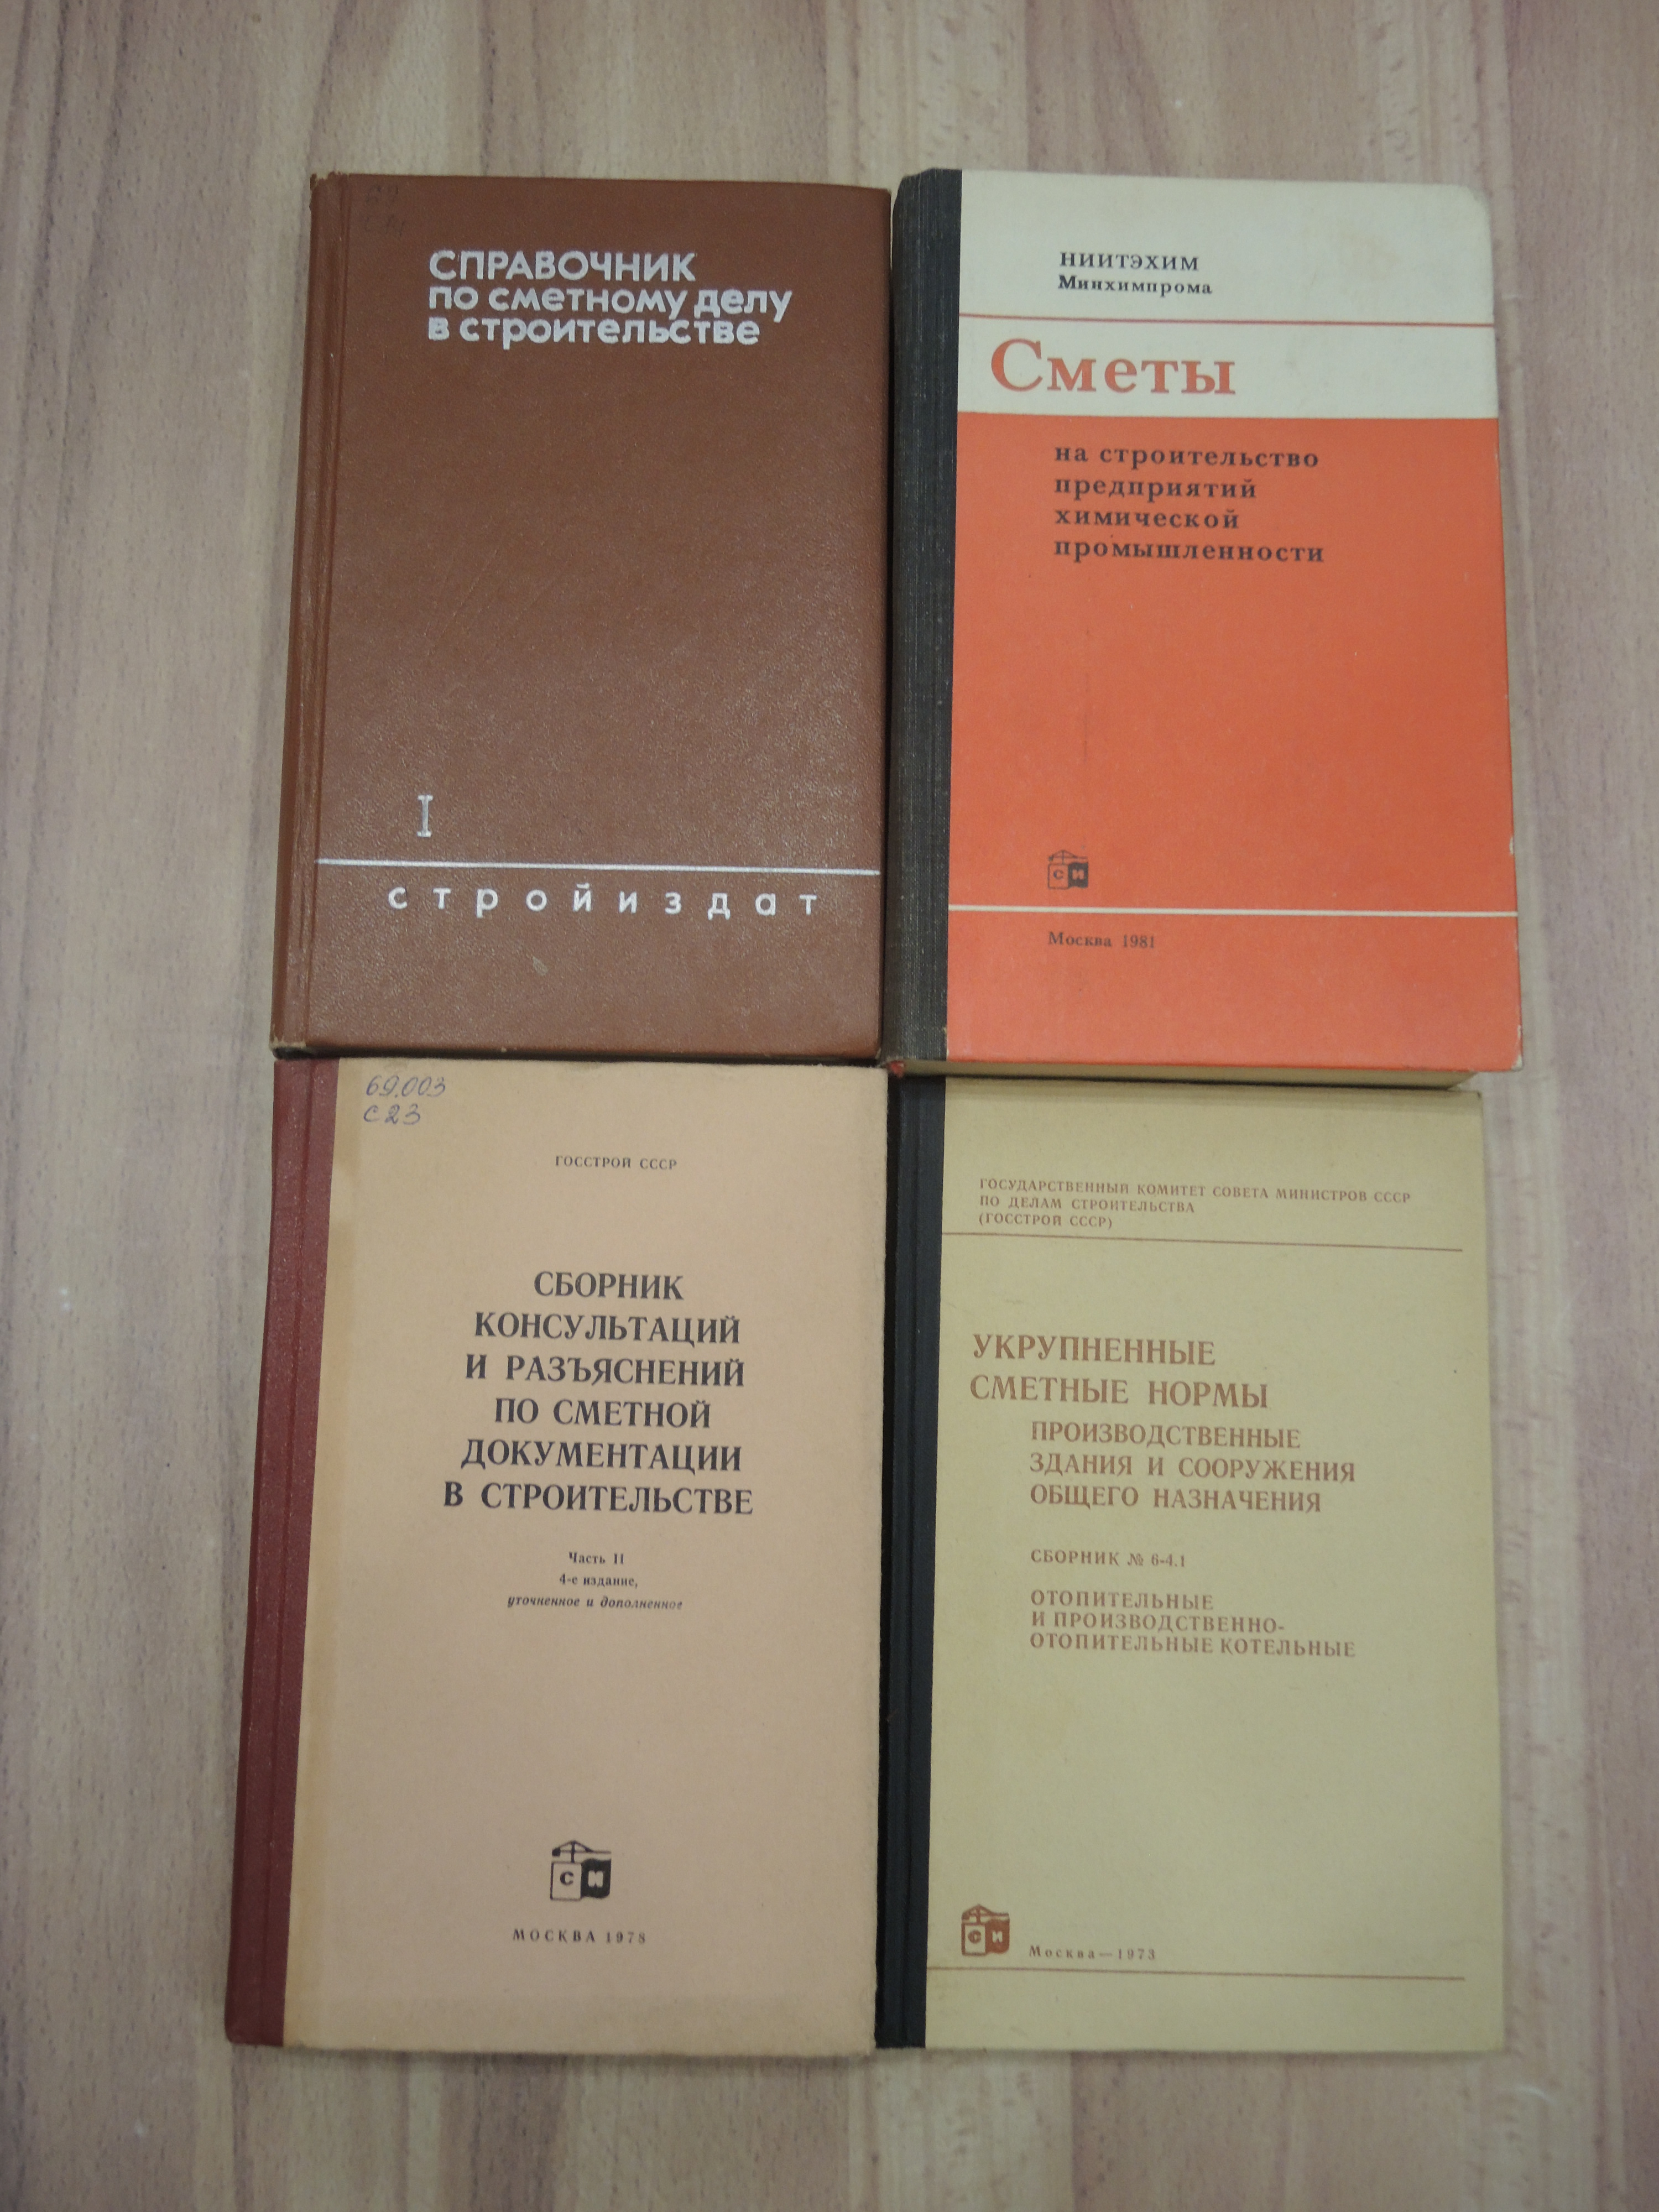 4 книги справочник сметы сметное дело строительство техническая документация нормы стройиздат СССР